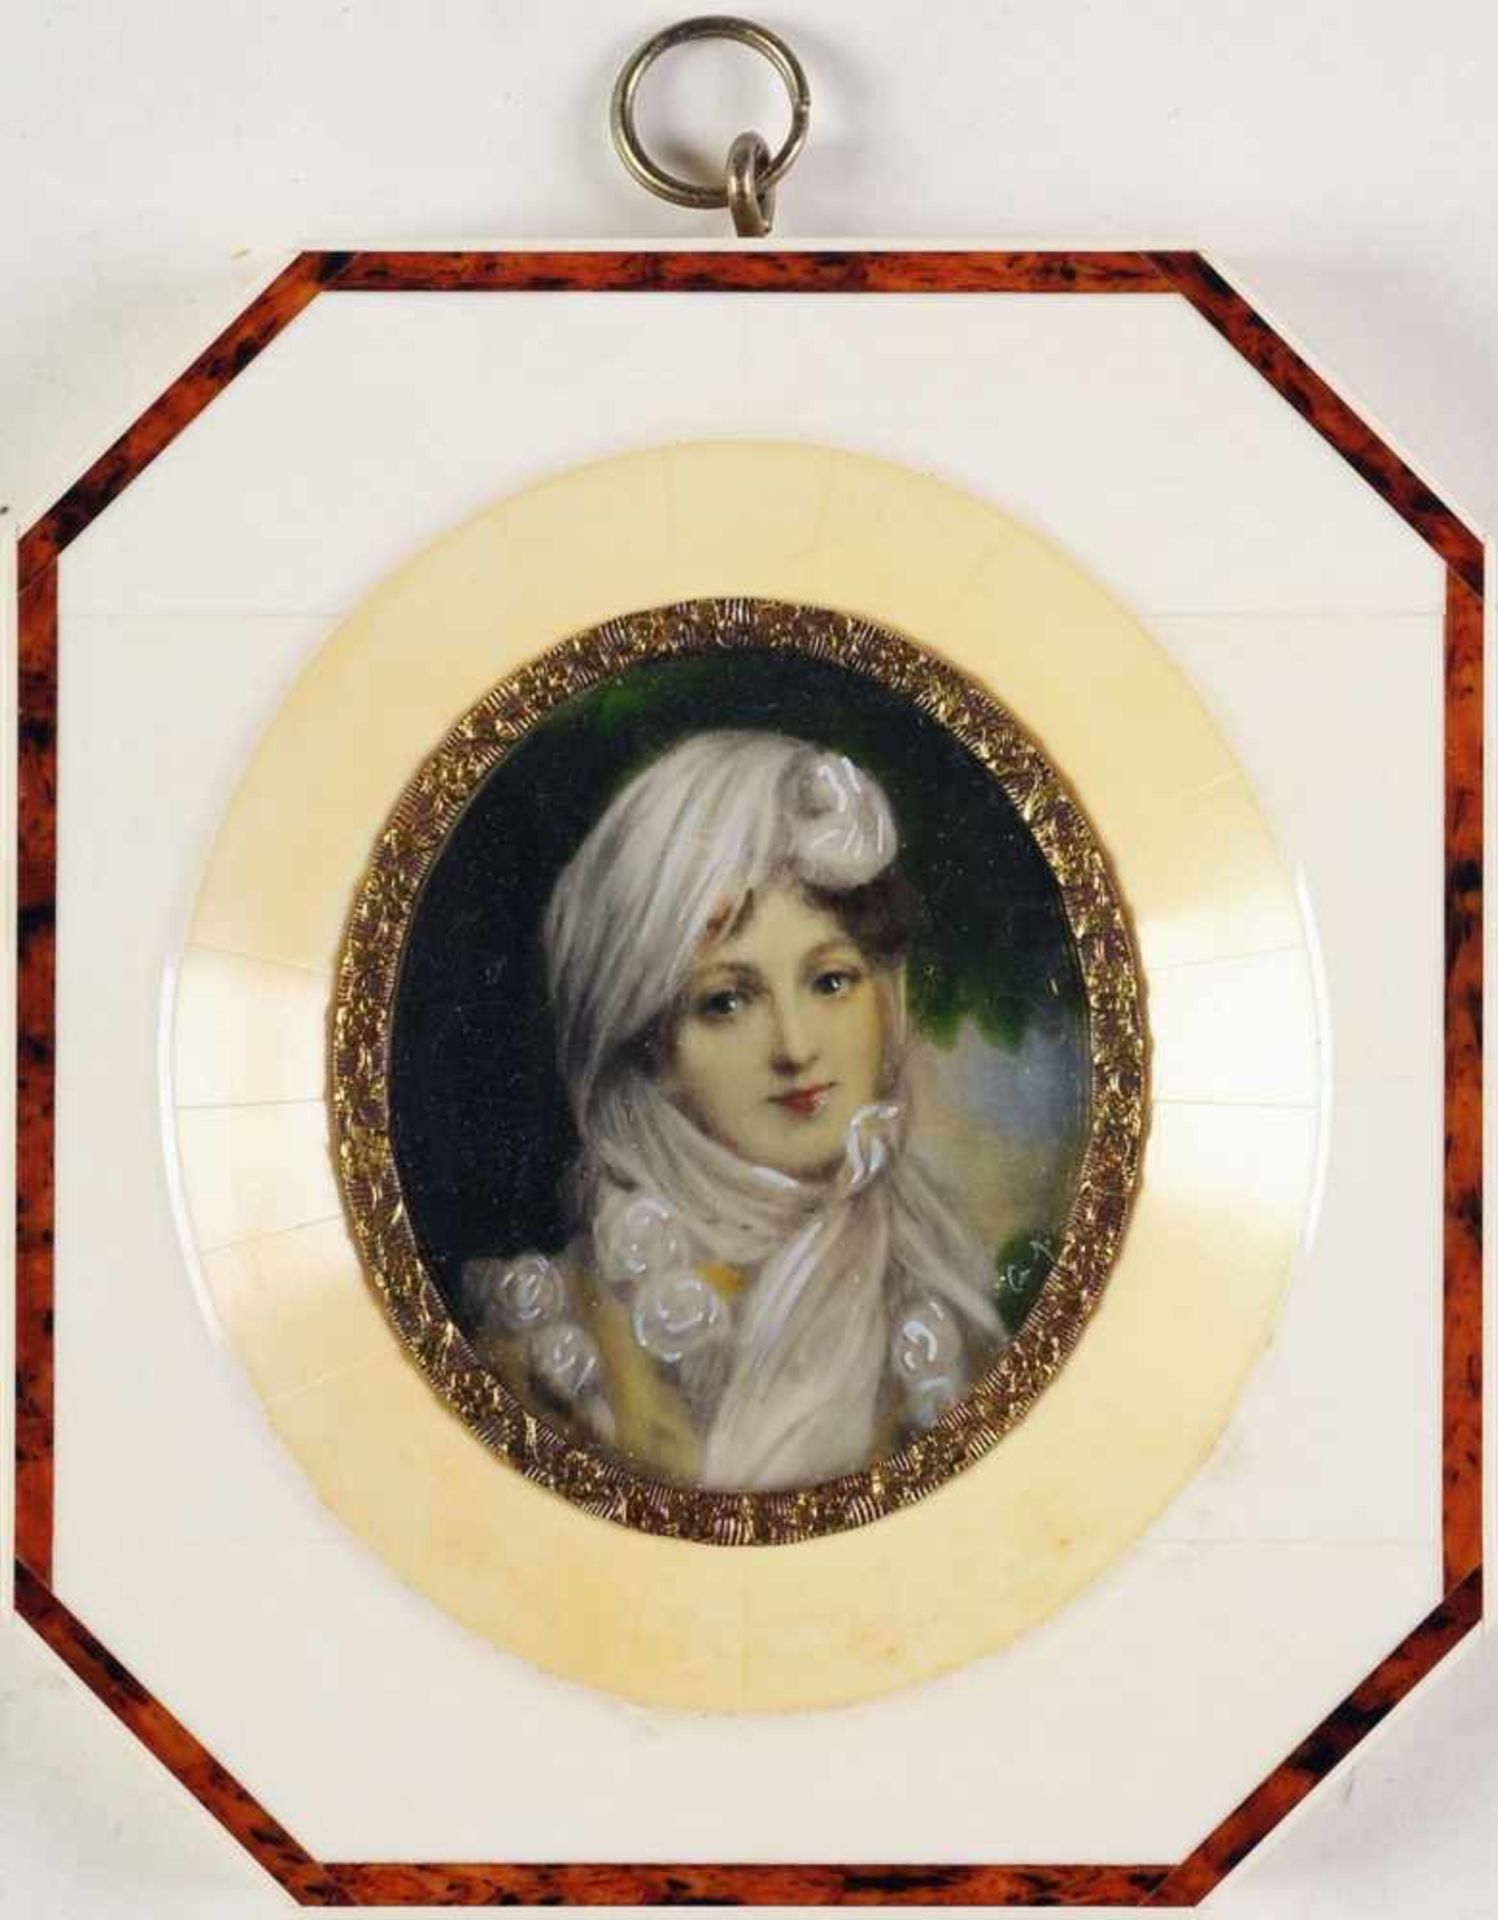 MiniaturbildÖl/Elfenbein. Ovale Form. Porträt d. Marie Louise von Österreich. R. u. nicht